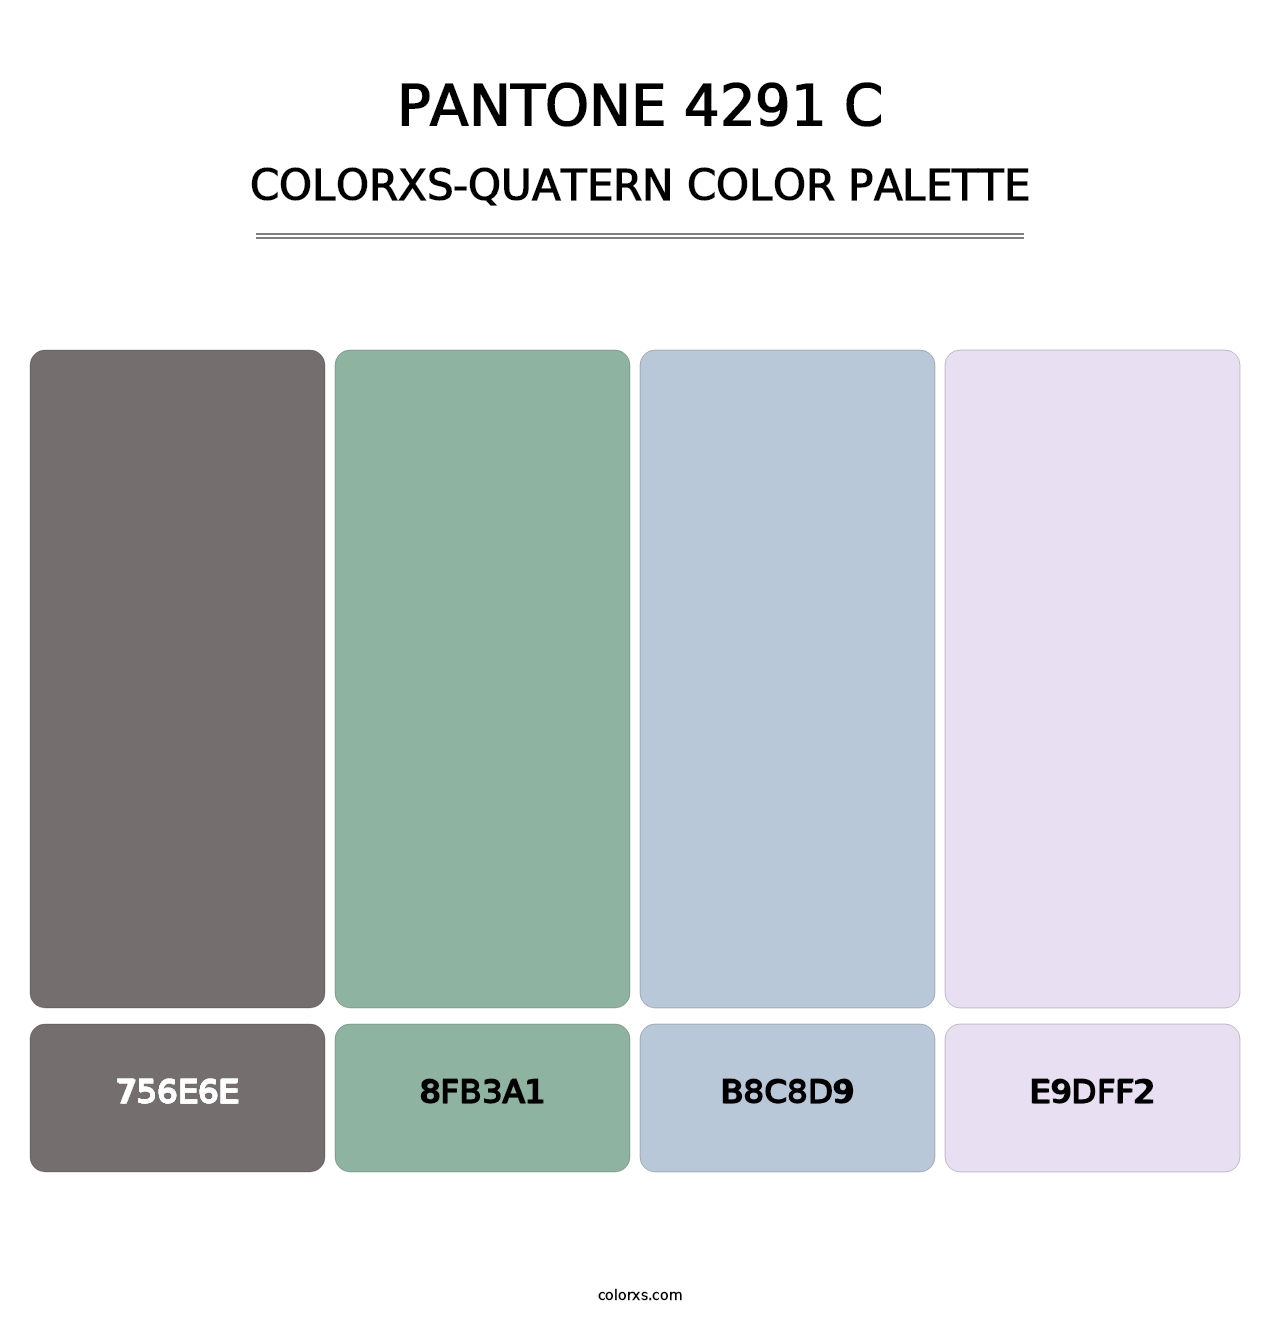 PANTONE 4291 C - Colorxs Quatern Palette